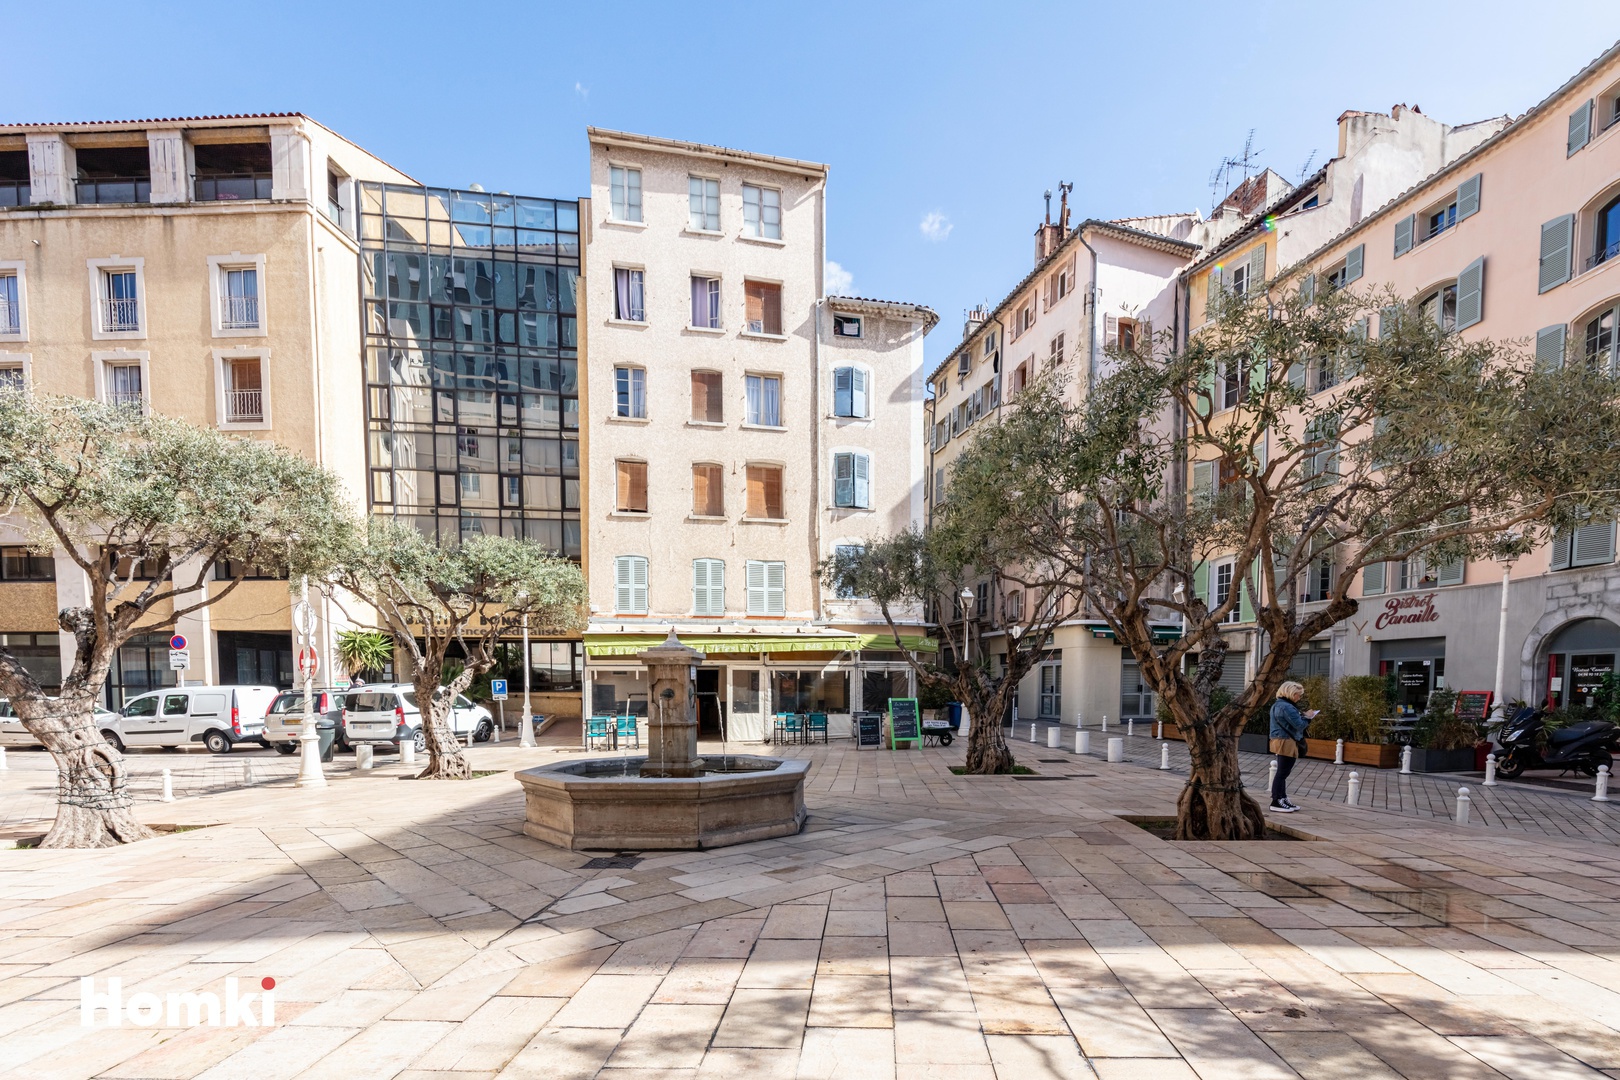 Homki - Vente Appartement  de 44.0 m² à Toulon 83000